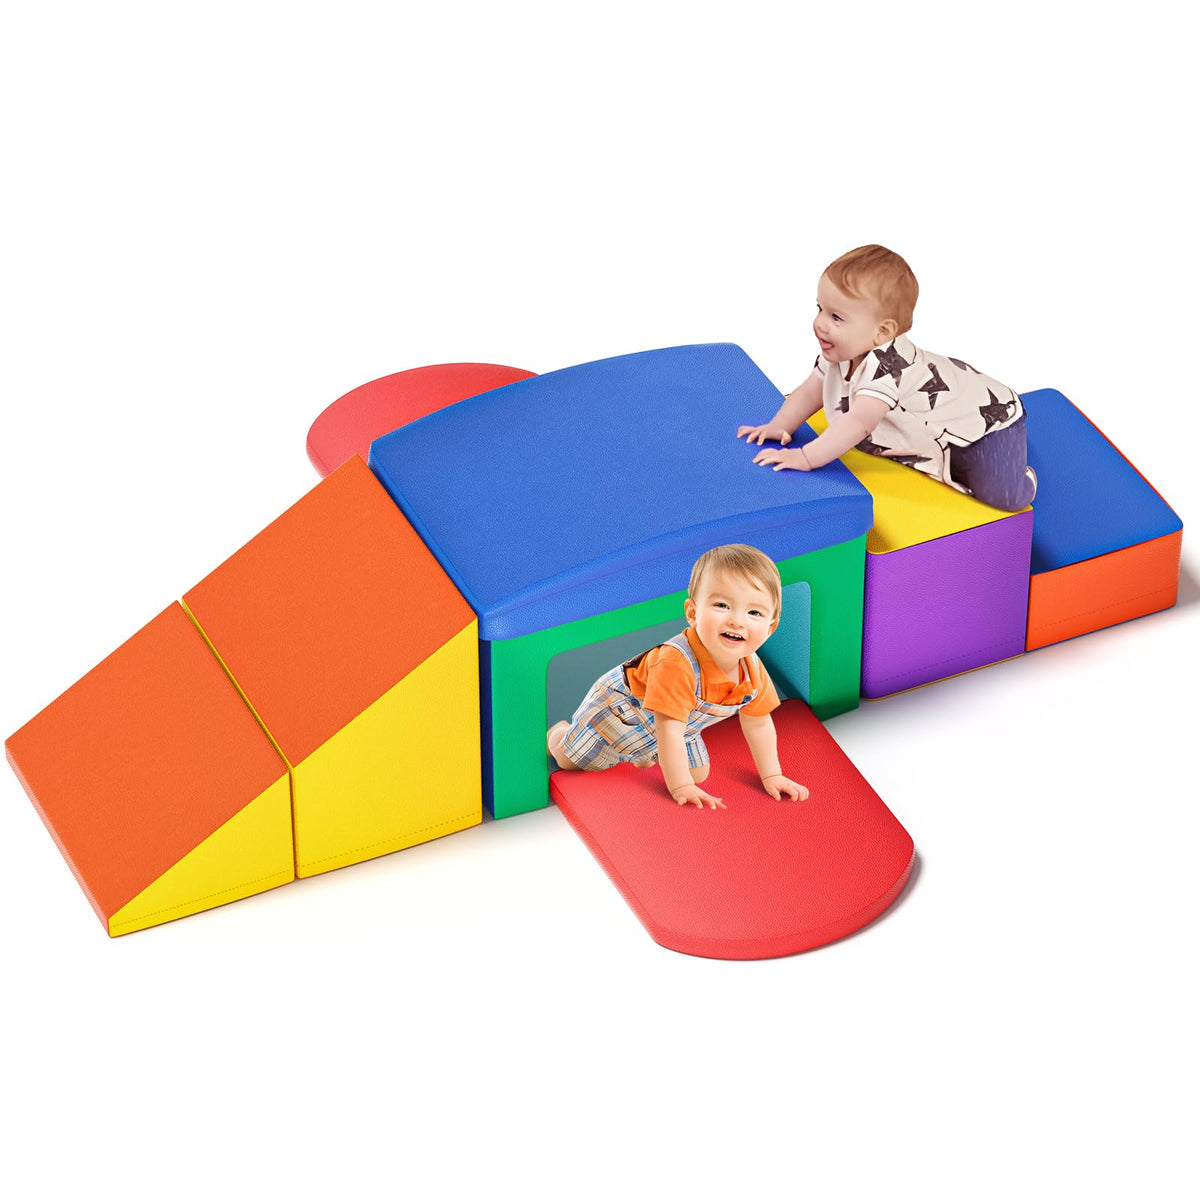 Lischwert Indoor Soft Foam Climber Play Sets, Toddler Climbing Toys